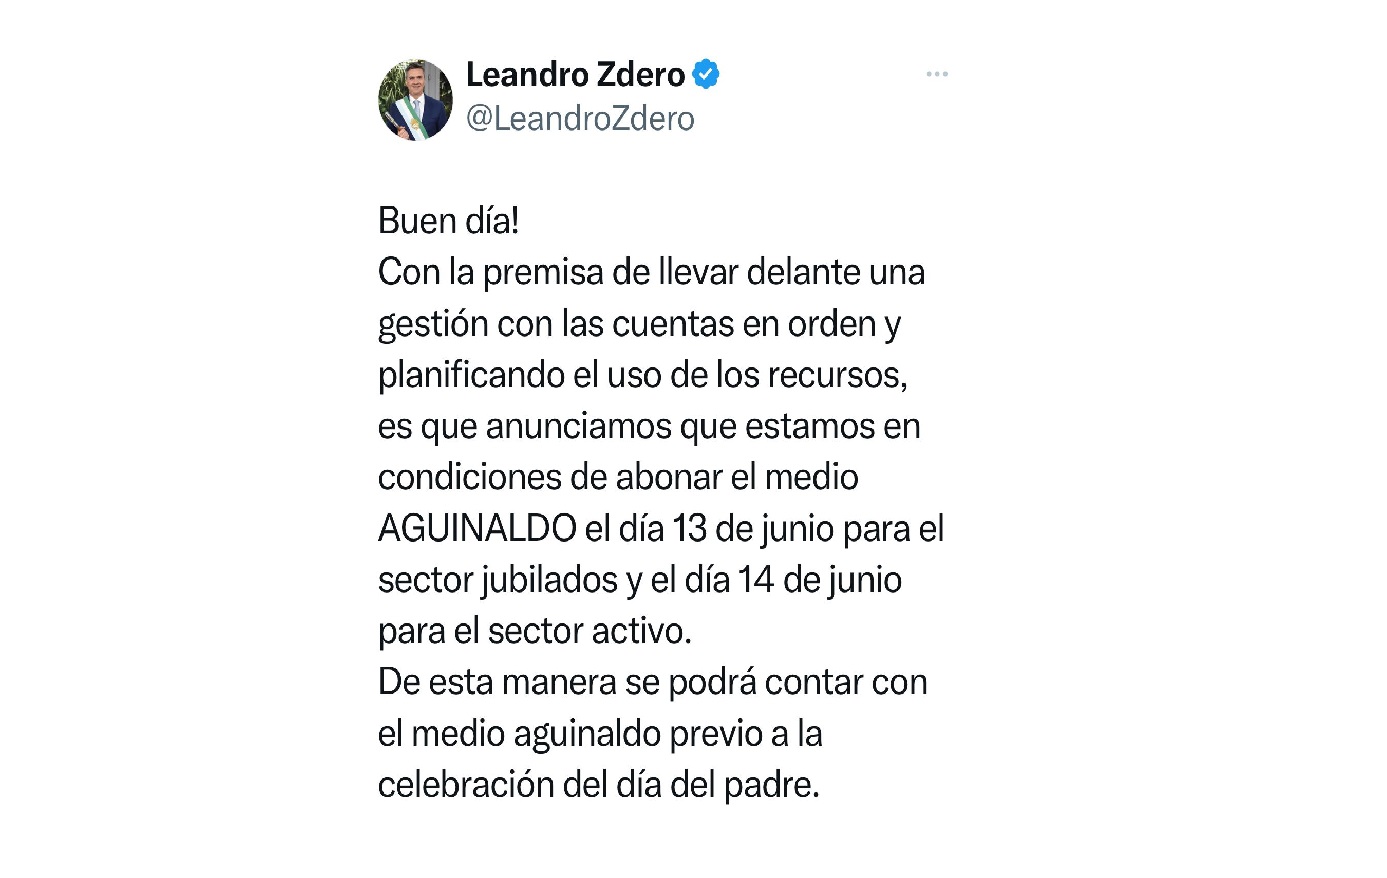 EL GOBERNADOR ZDERO ANUNCIÓ EL PAGO DEL AGUINALDO